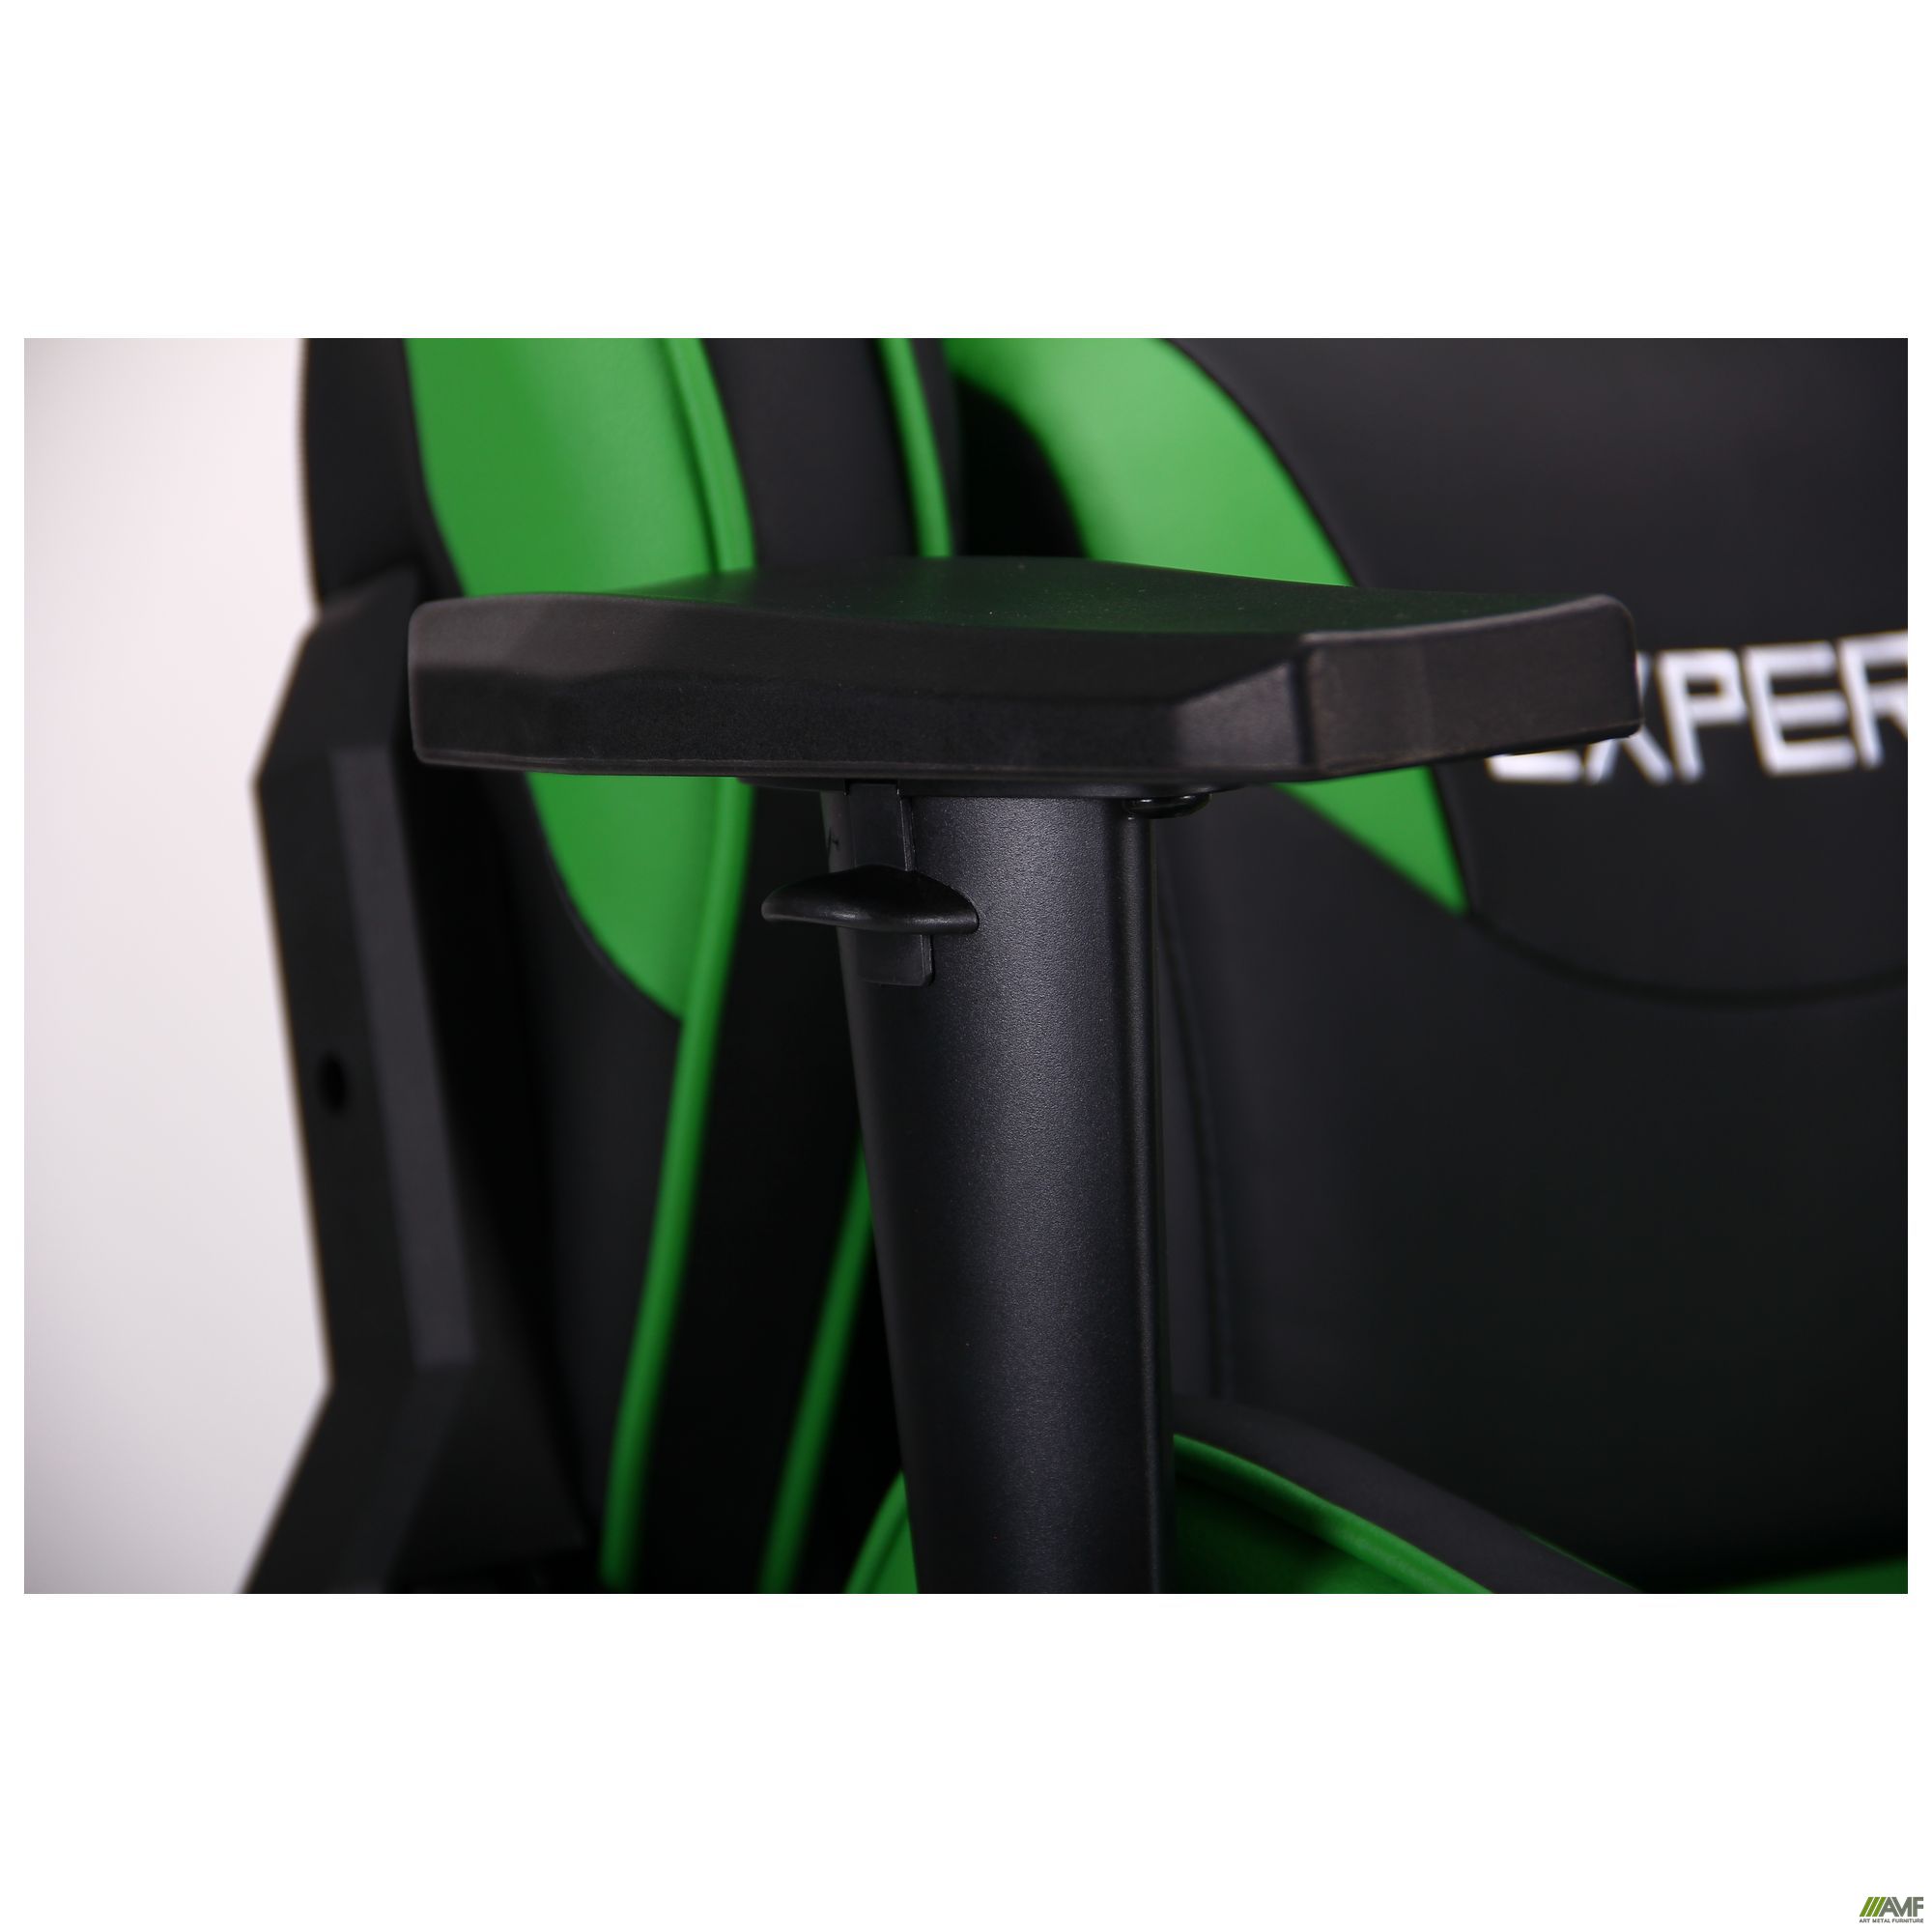 Фото 10 - Кресло VR Racer Expert Champion черный/зеленый 